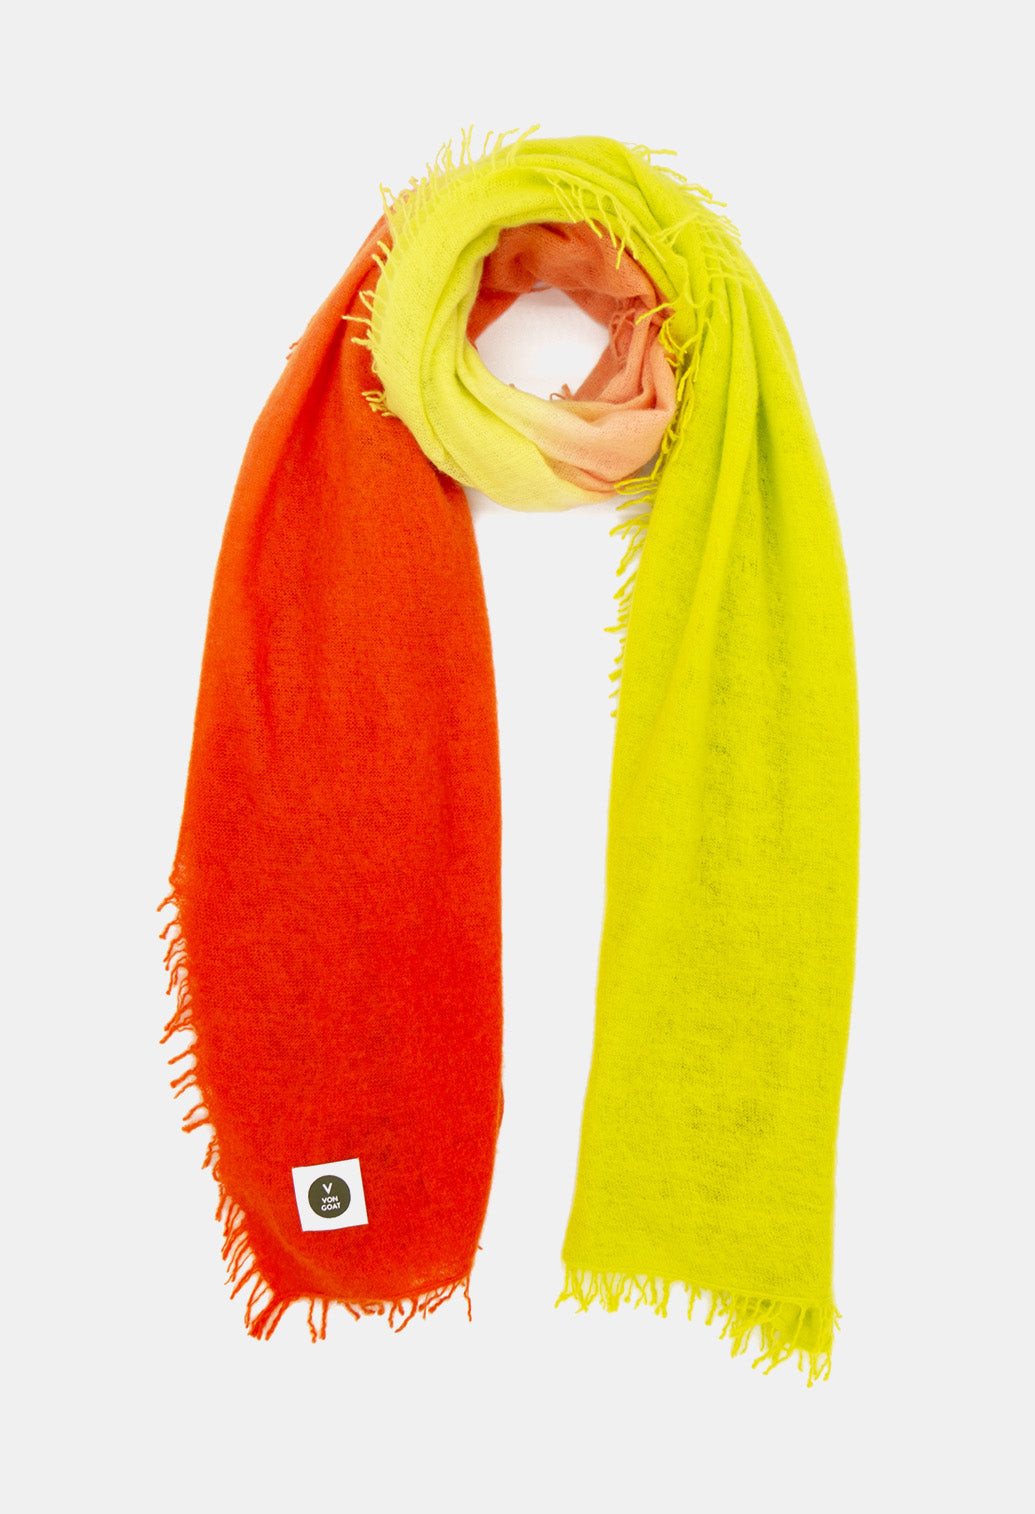 V Von Goat Kaschmir-Schal mit Fransen im Tiedye-Stil in den Farben Orange und Gelb aus reiner Cashmere-Wolle auf weißem Untergrund.